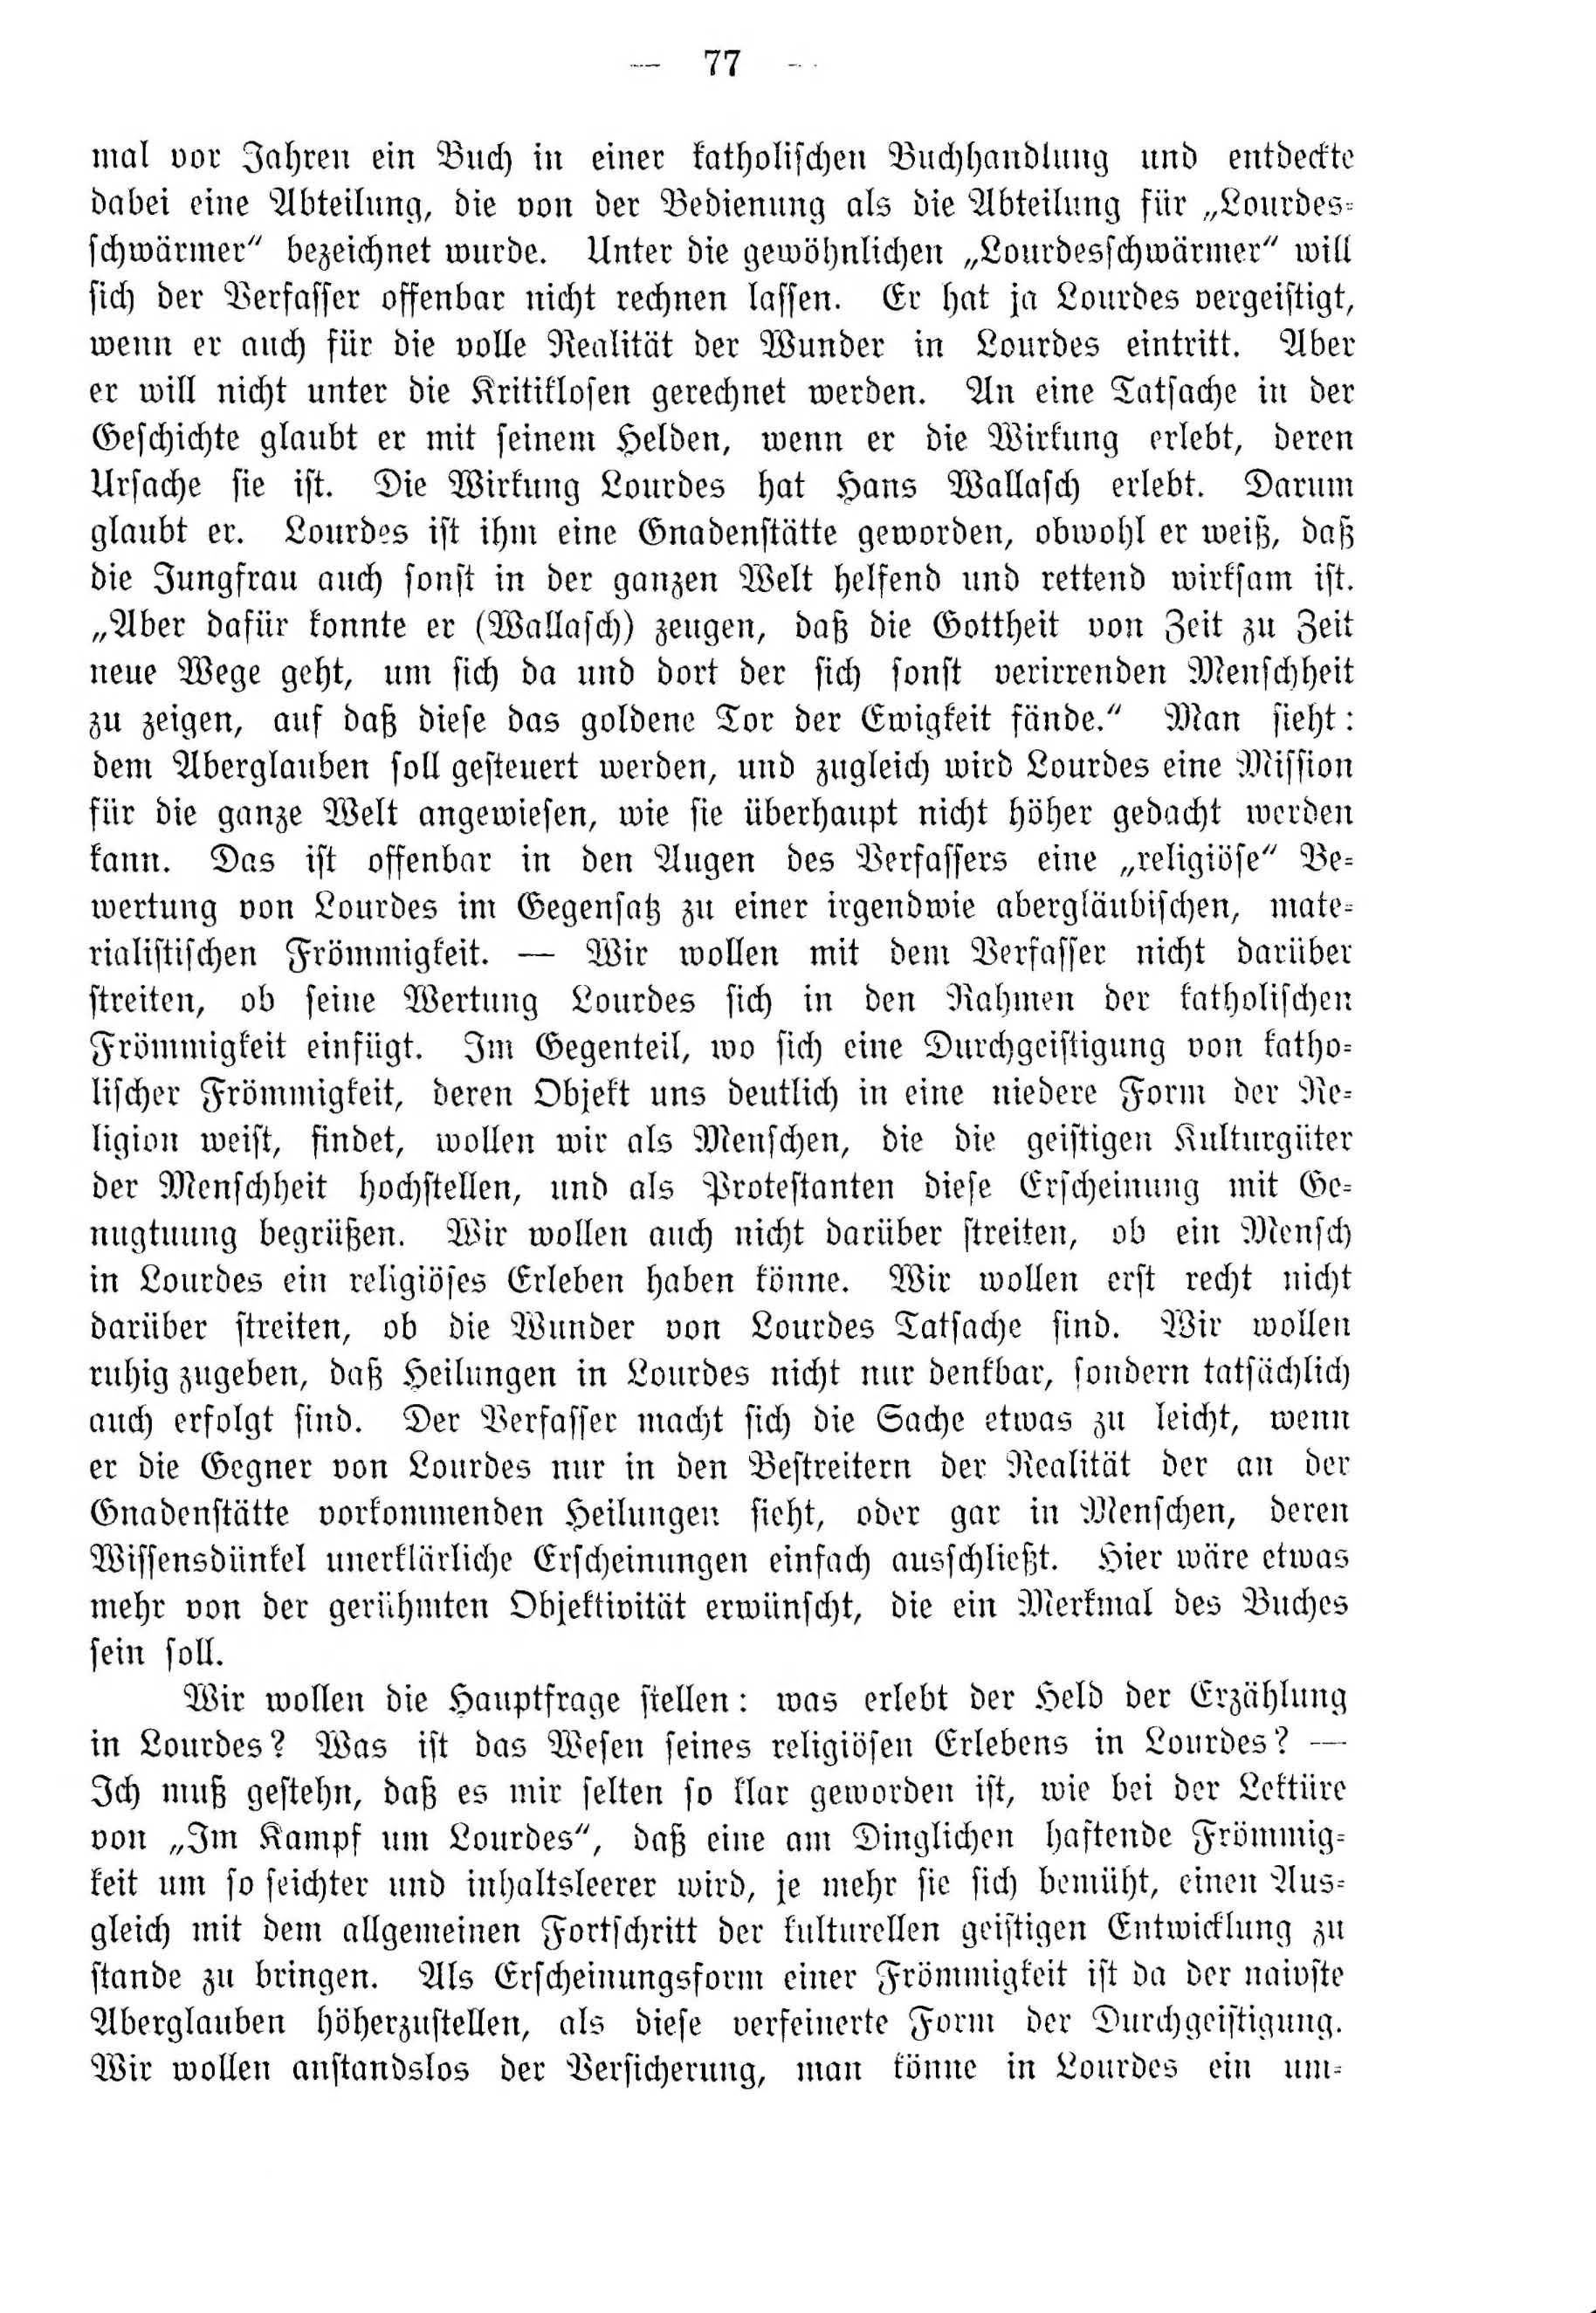 Deutsche Monatsschrift für Russland [4] (1915) | 77. (77) Основной текст